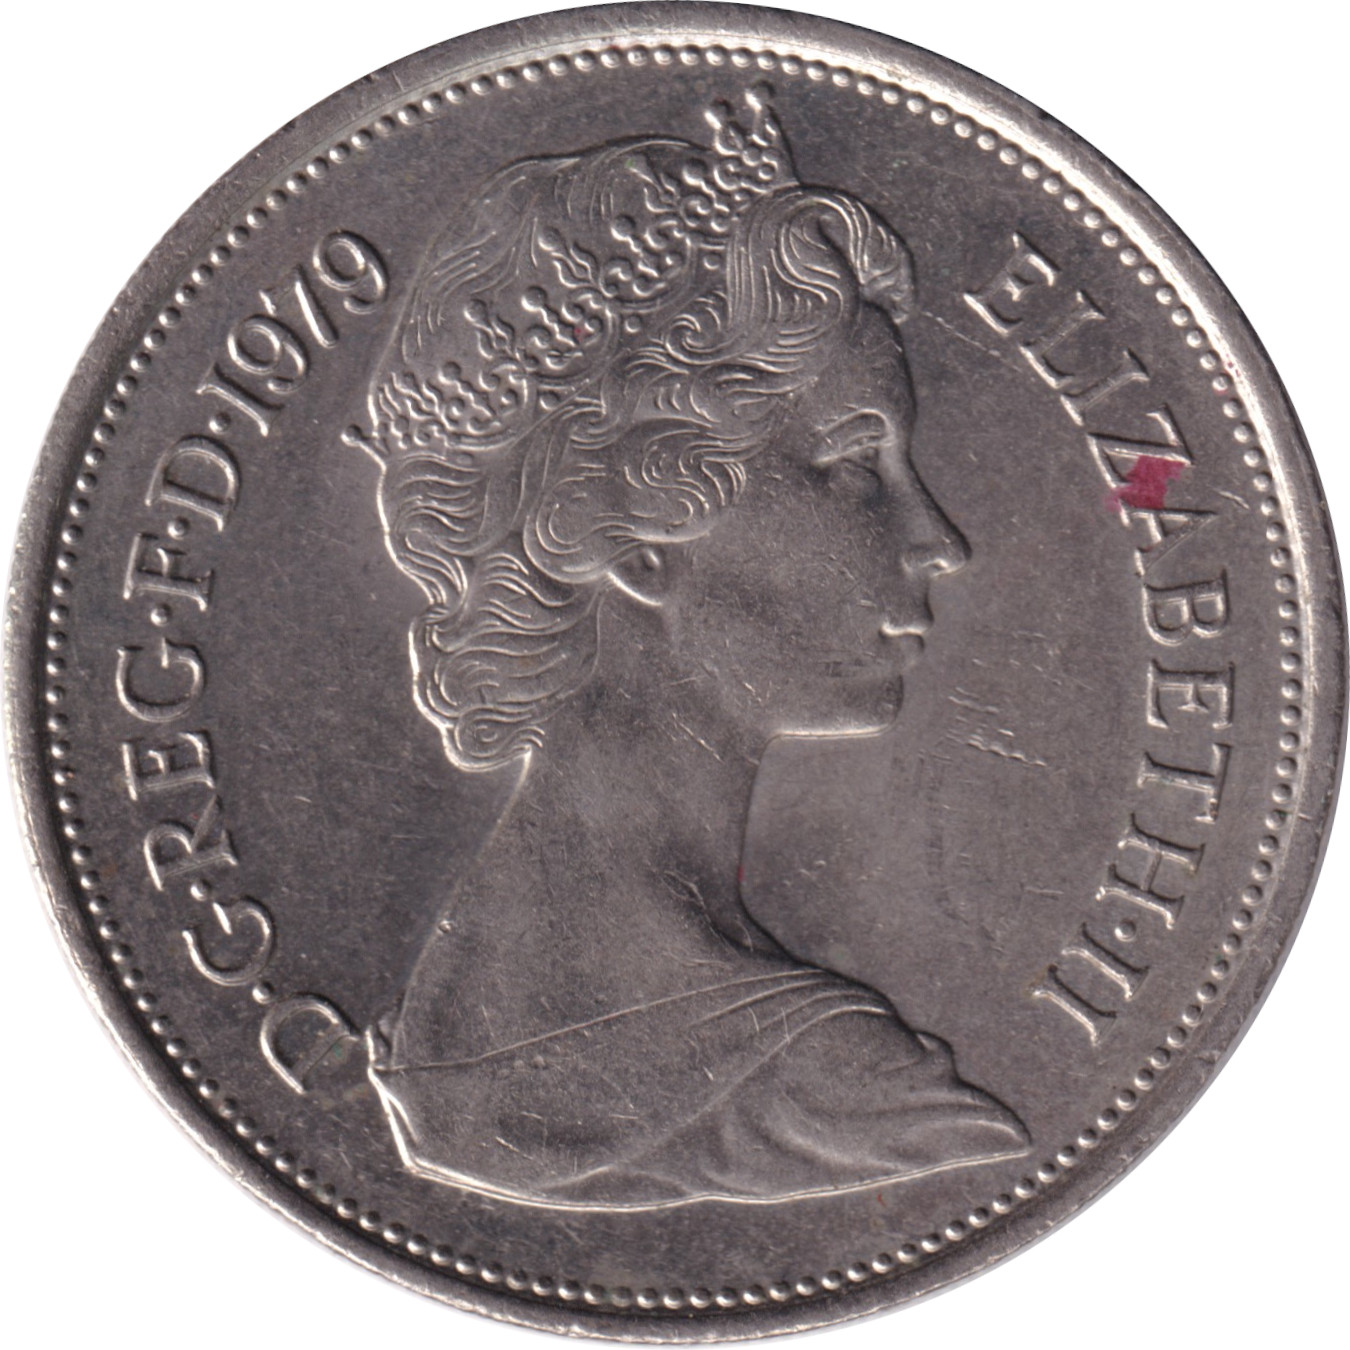 10 pence - Elizabeth II - Buste jeune